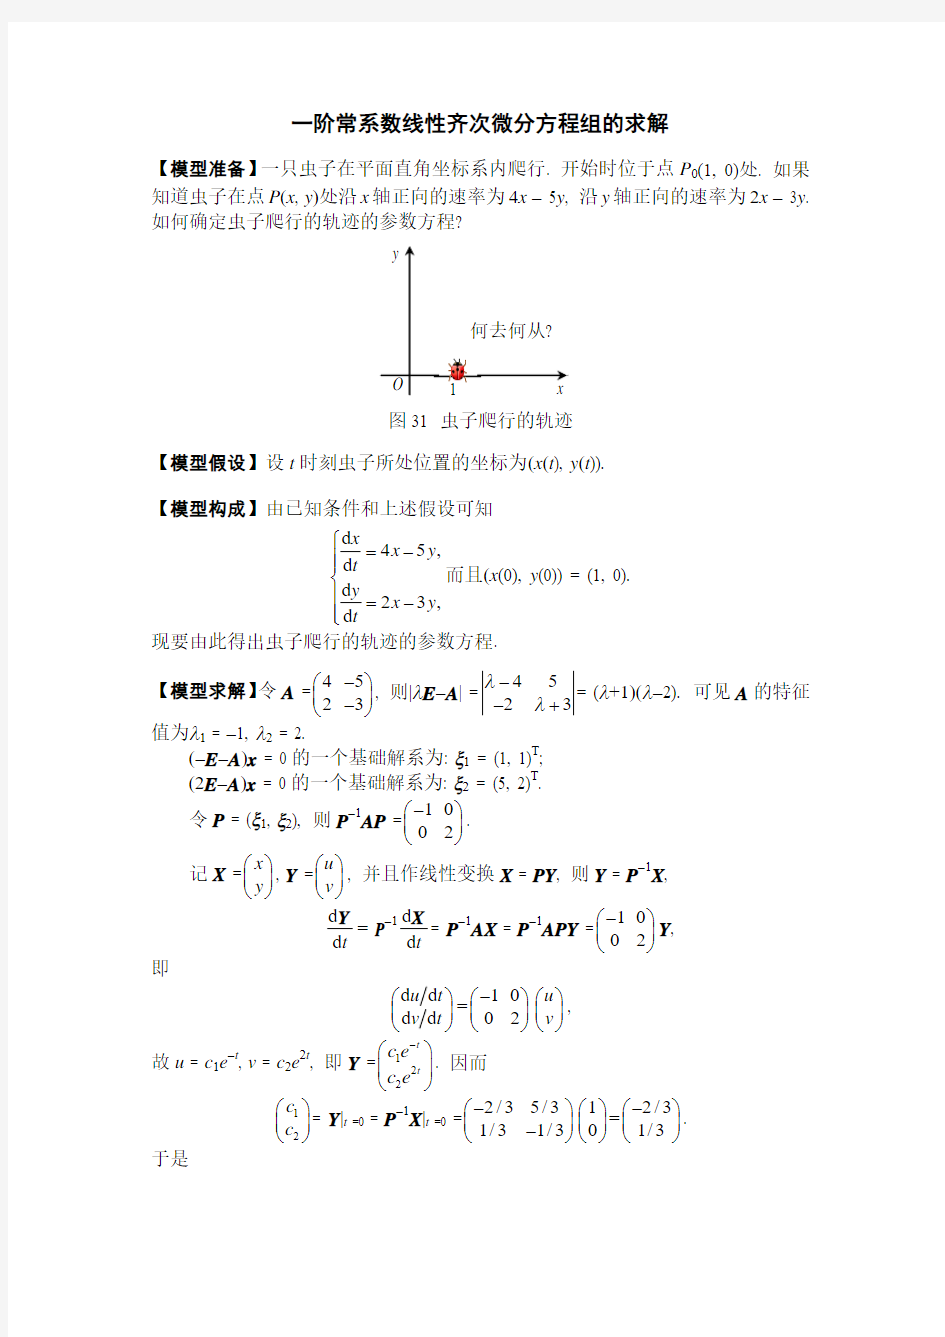 一阶常系数线性齐次微分方程组的求解